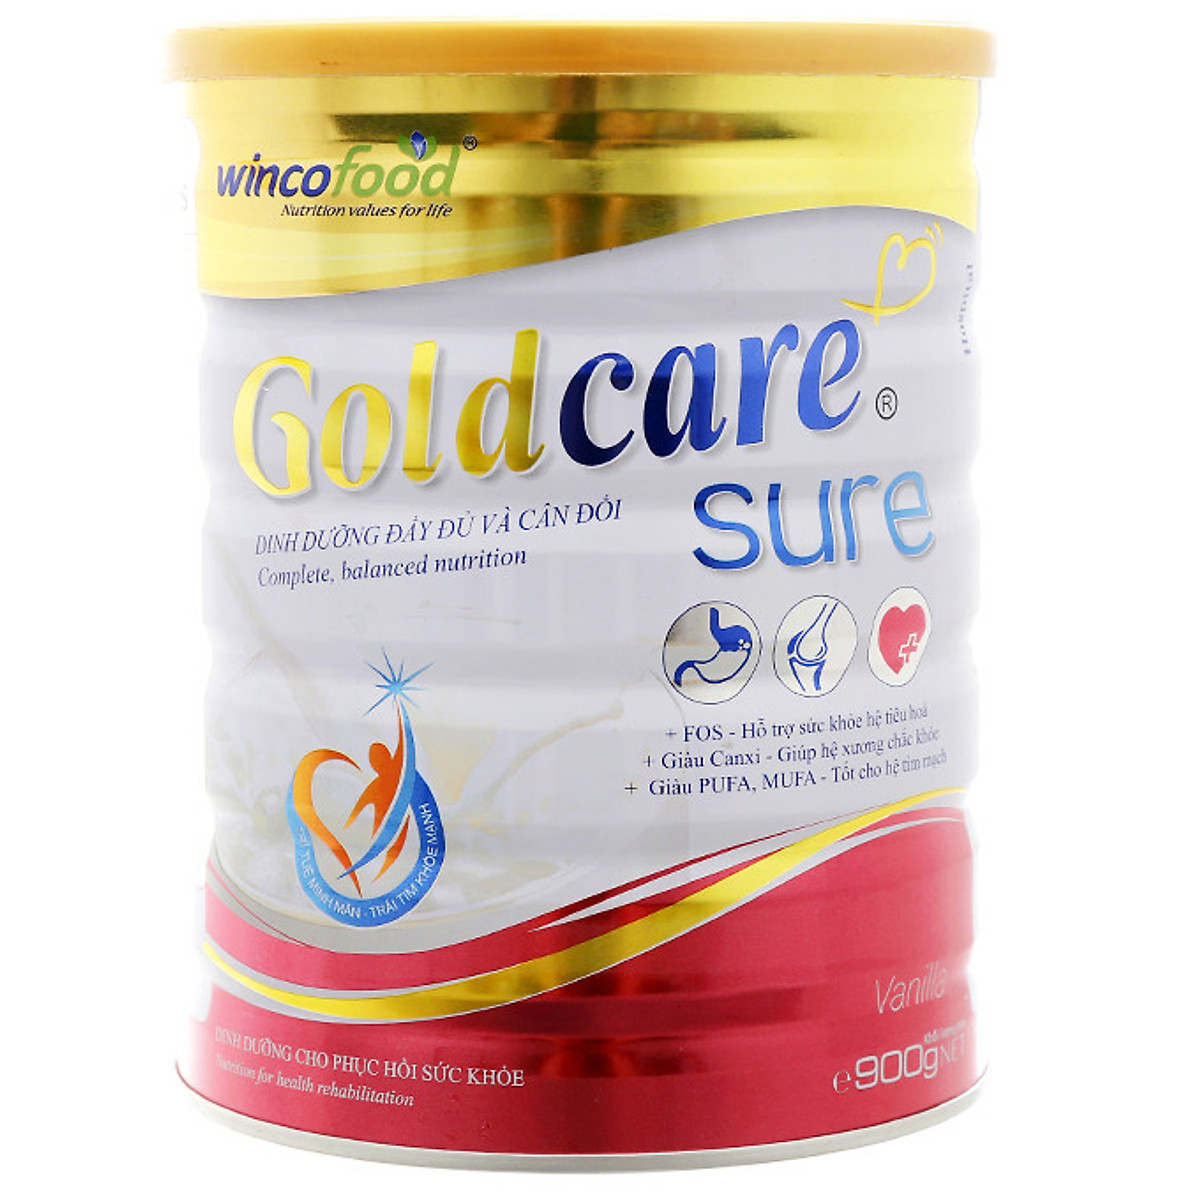 Sữa bột Wincofood Goldcare Sure Dinh dưỡng đầy đủ và cân đối lon 850g từ